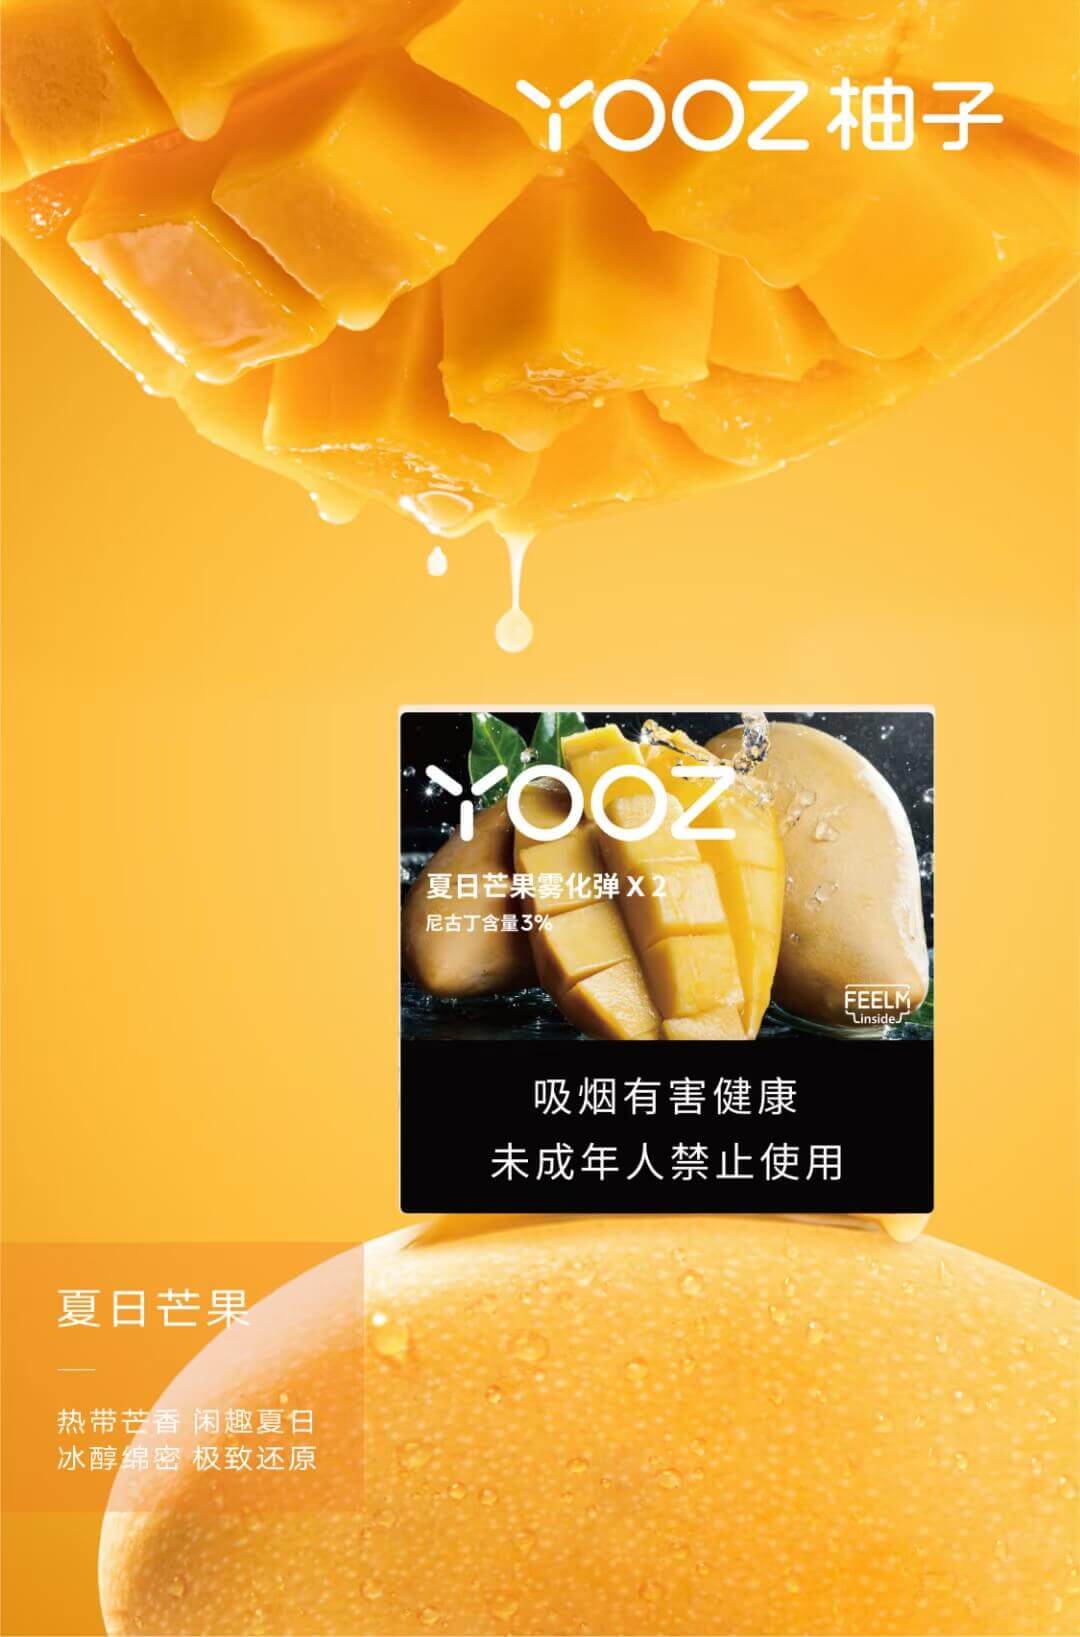 yooz柚子新口味：夏日芒果、经典浓香、柚子三款改良口味评测